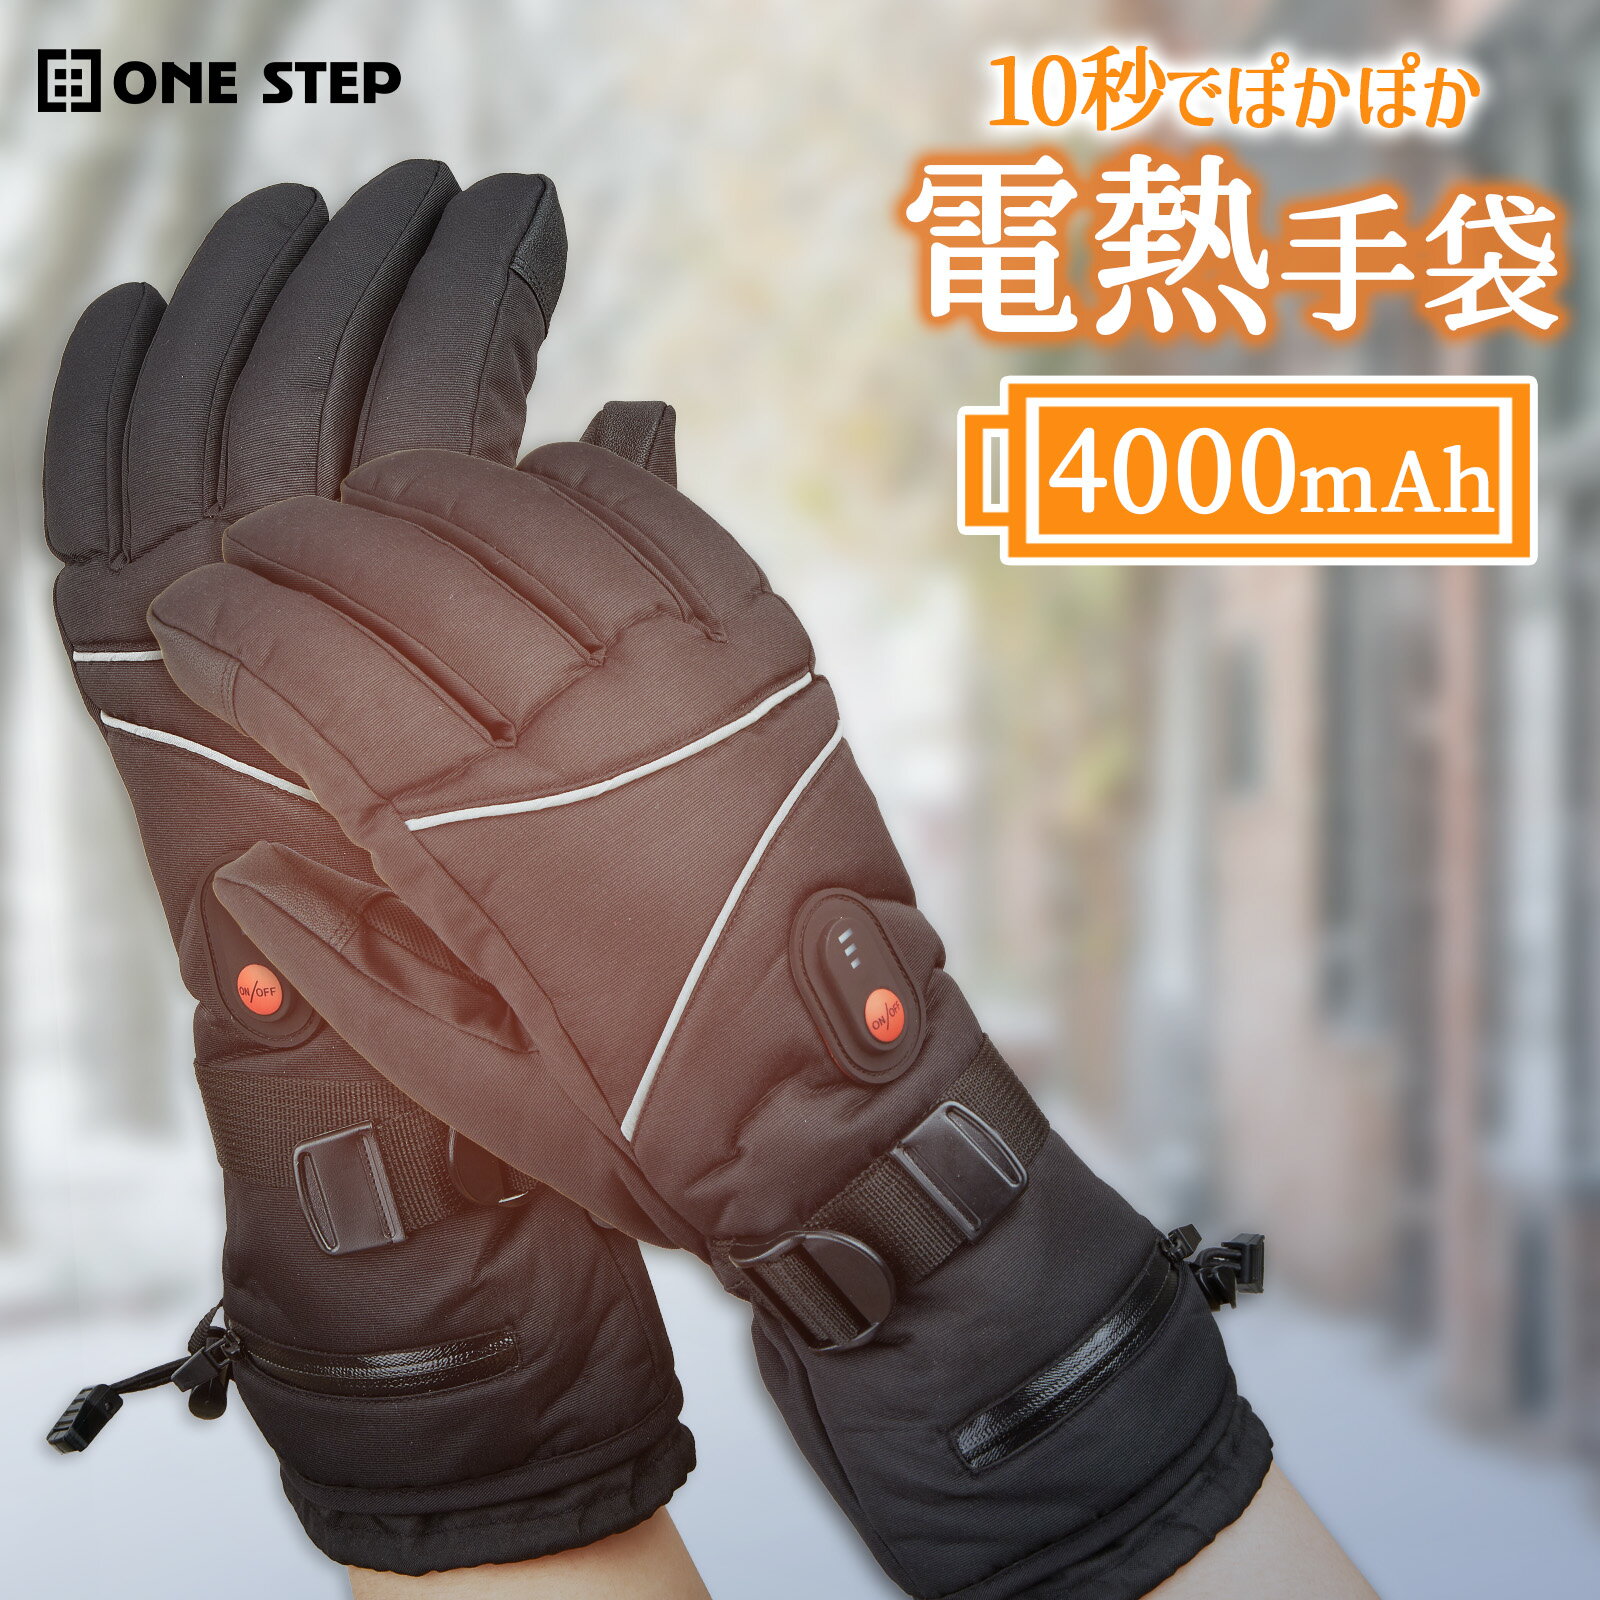 電熱グローブ 電熱手袋 バイク グローブ 4000mAhバッテリー付き 3段階温度調節 ヒーターグローブ